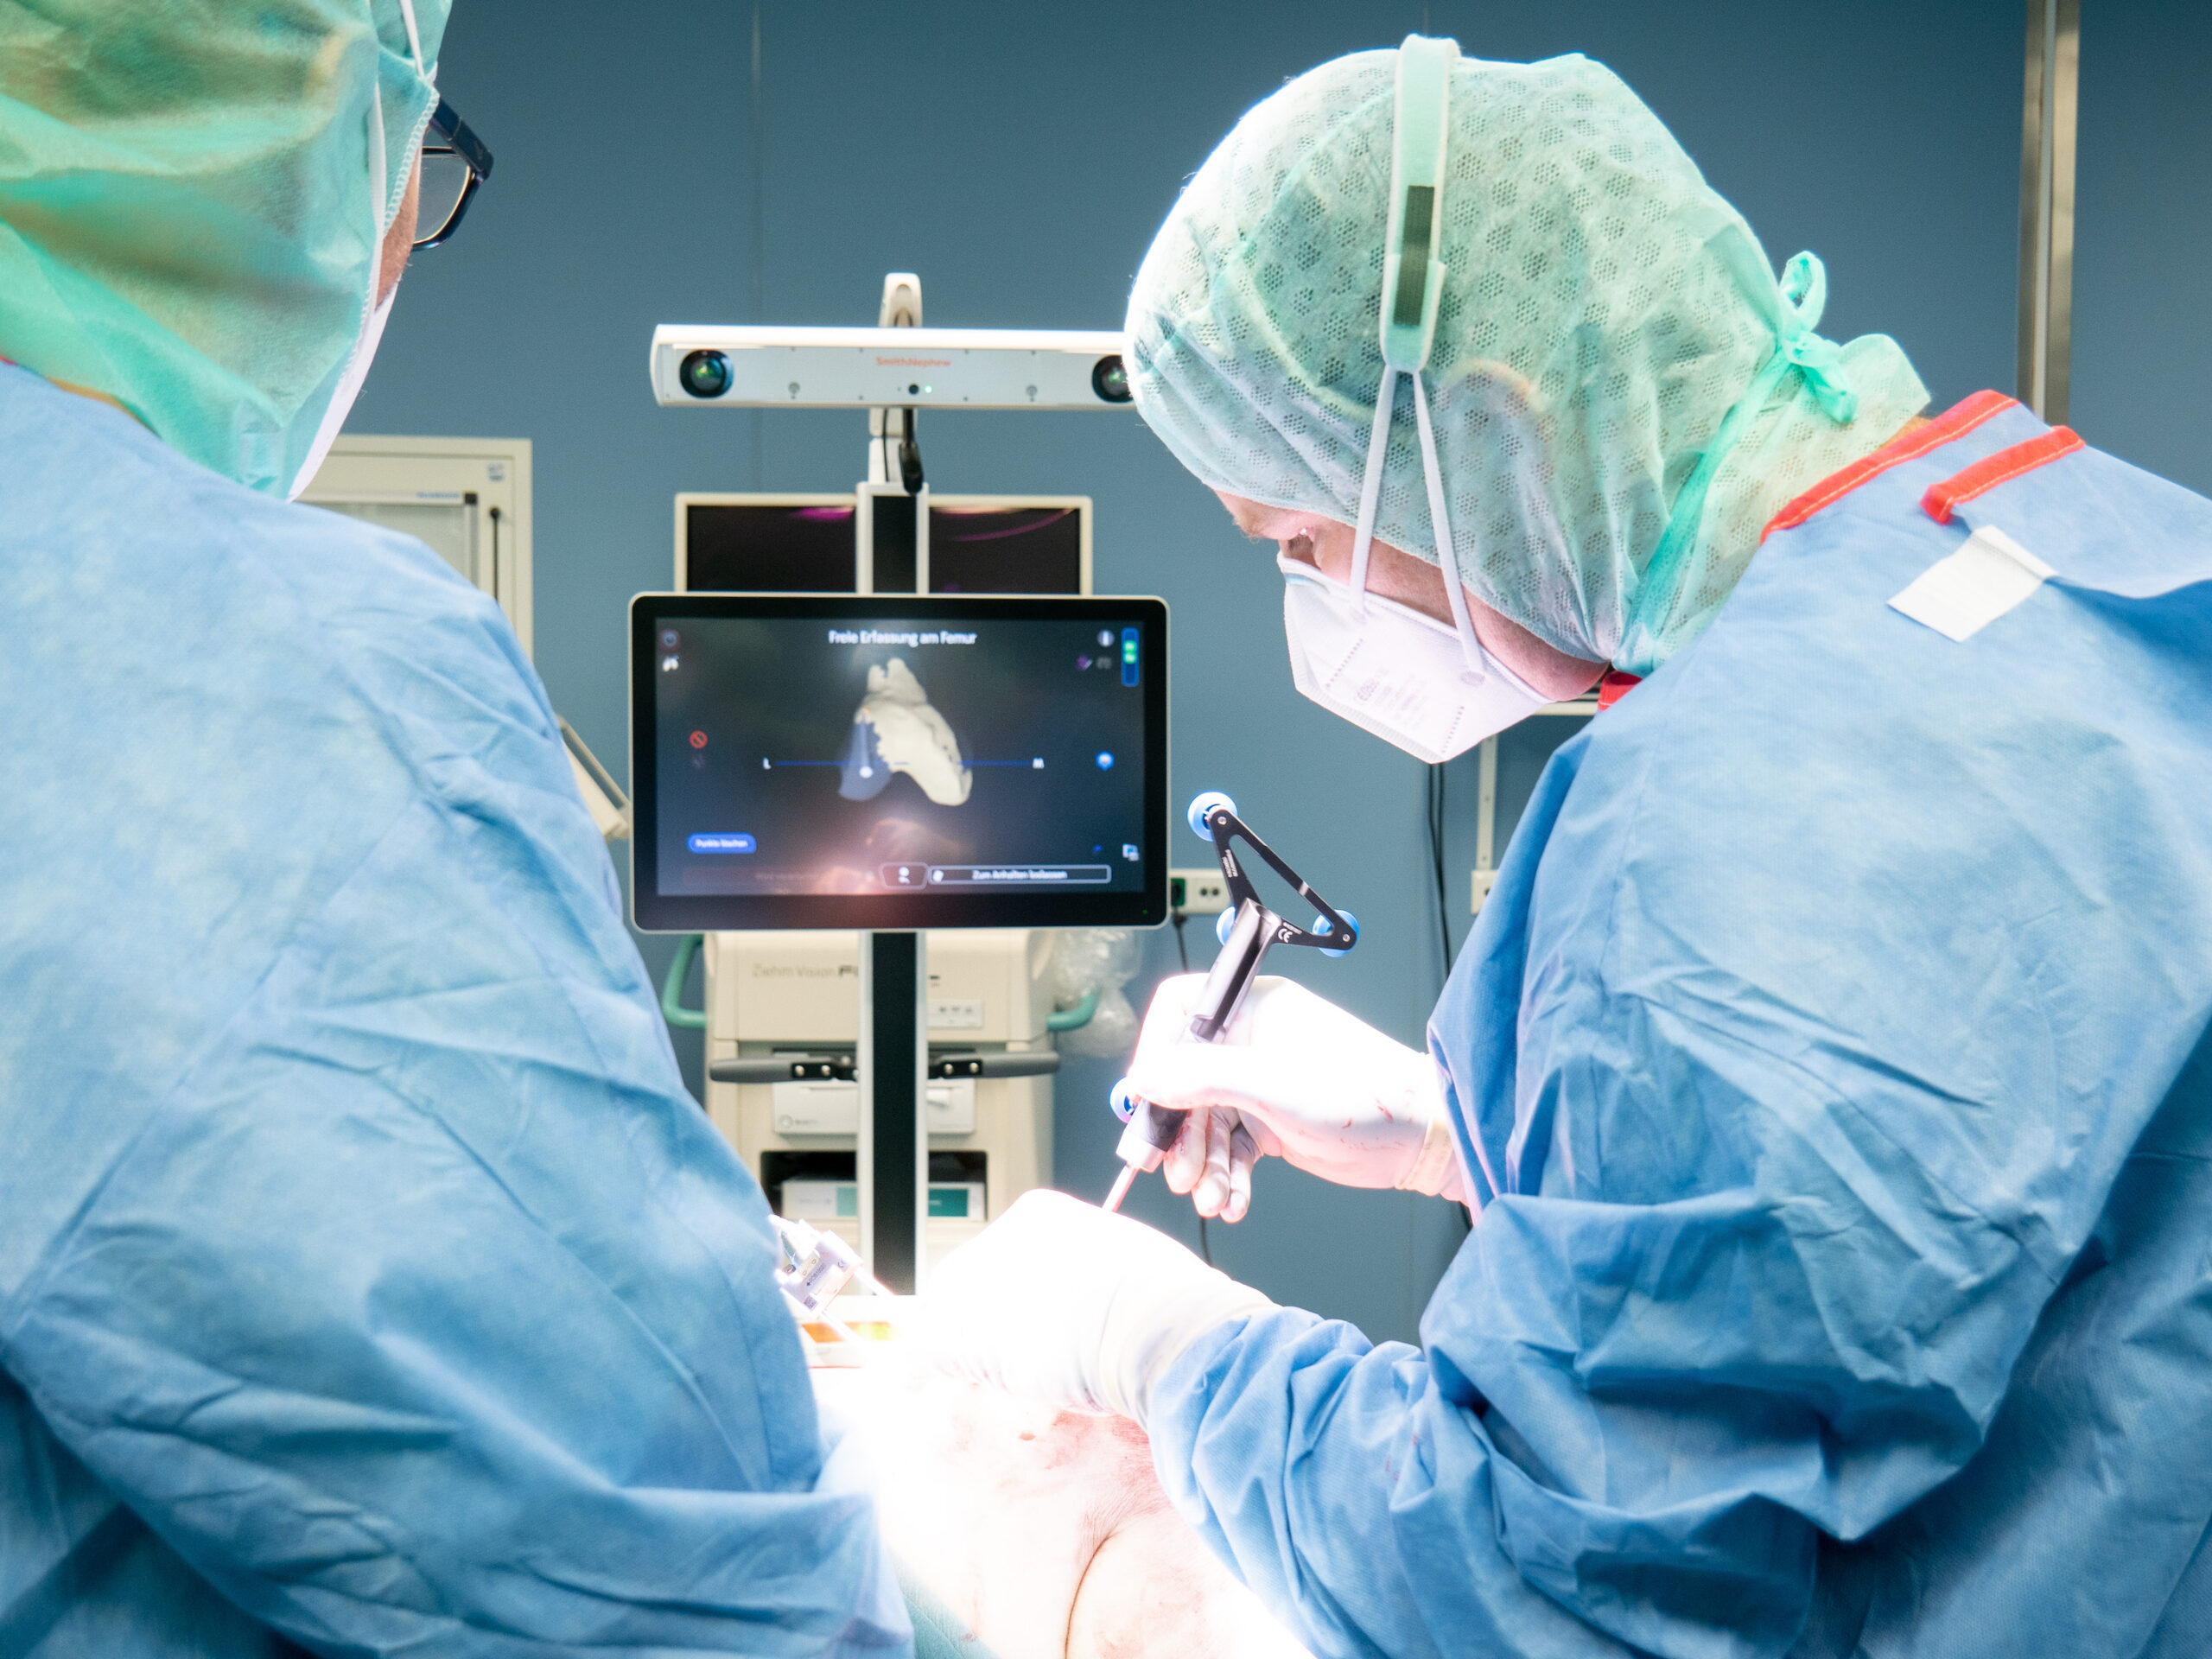 Das Evangelische Klinikum Gelsenkirchen nutzt als eines der ersten Krankenhäuser deutschlandweit ein neuartiges Roboter-System für Implantation von Knie-Prothesen.